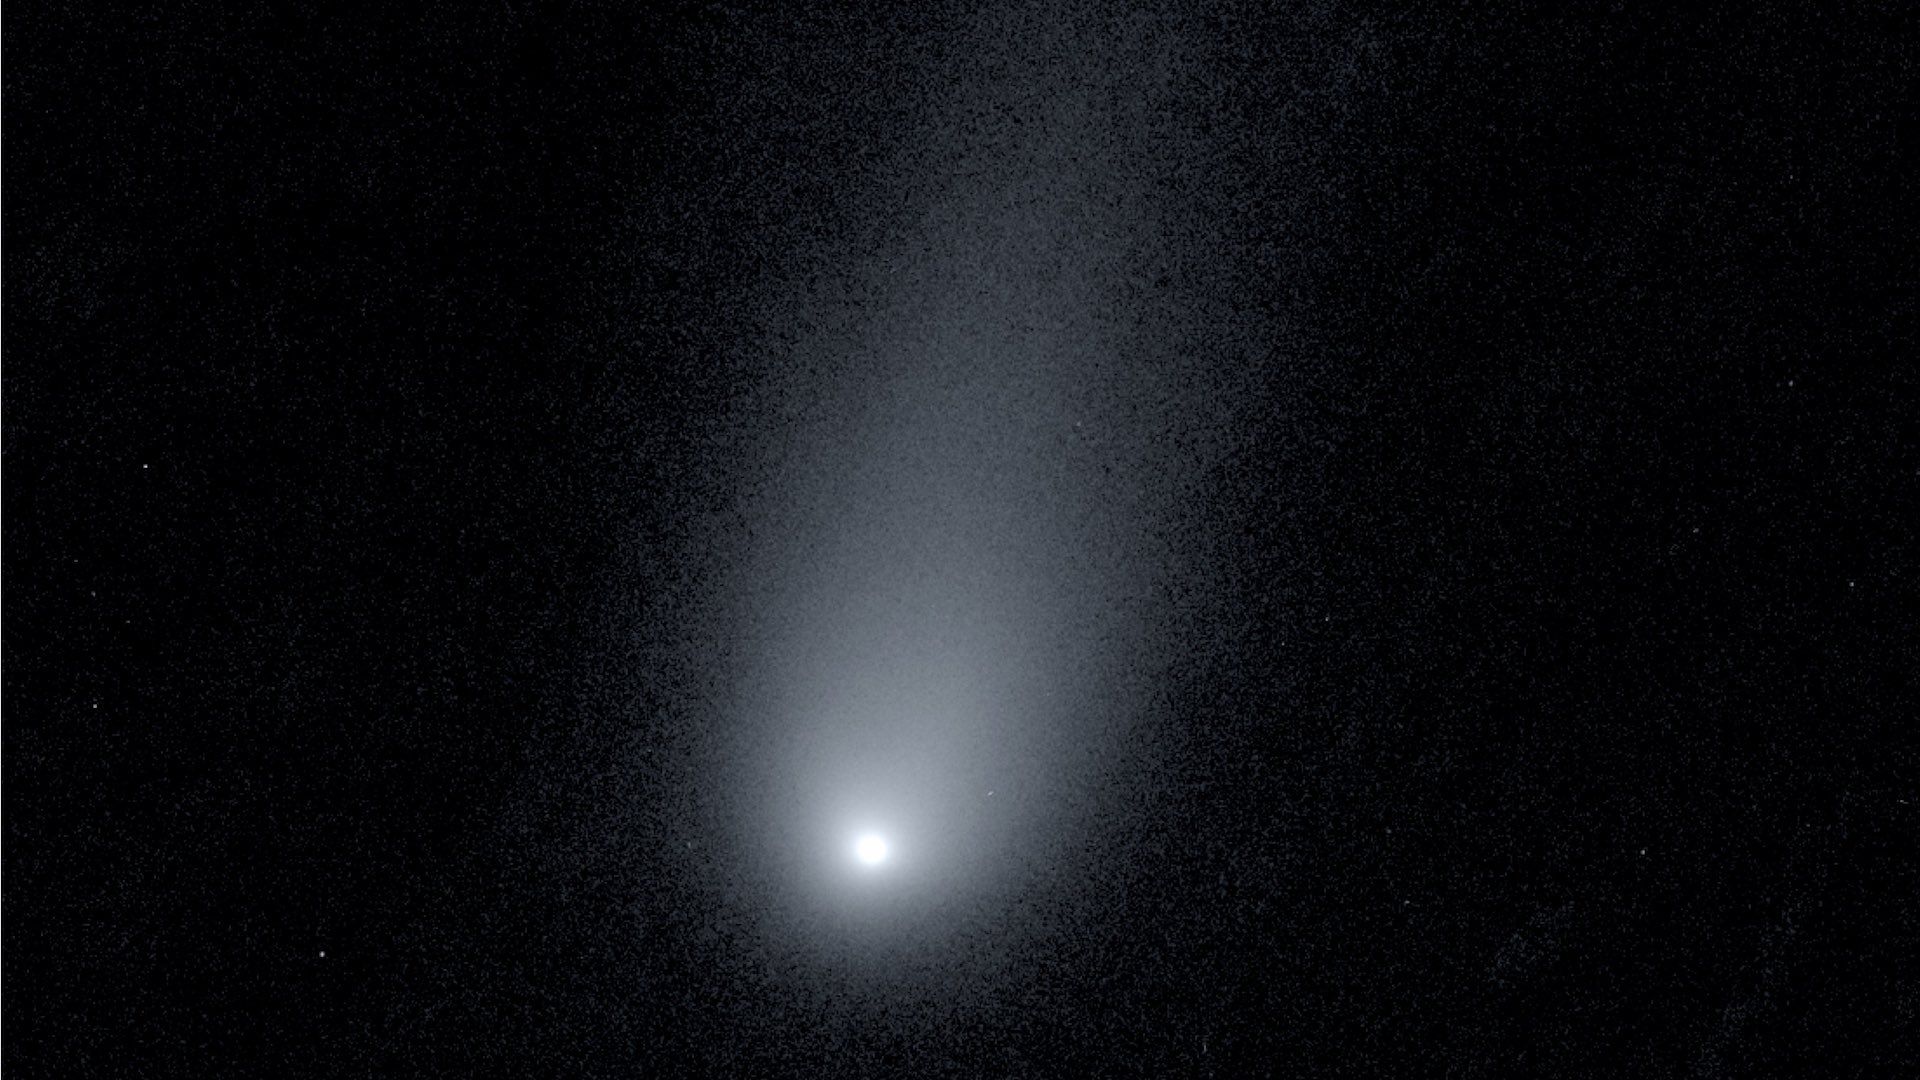 A photo of the interstellar comet 2I/Borisov.